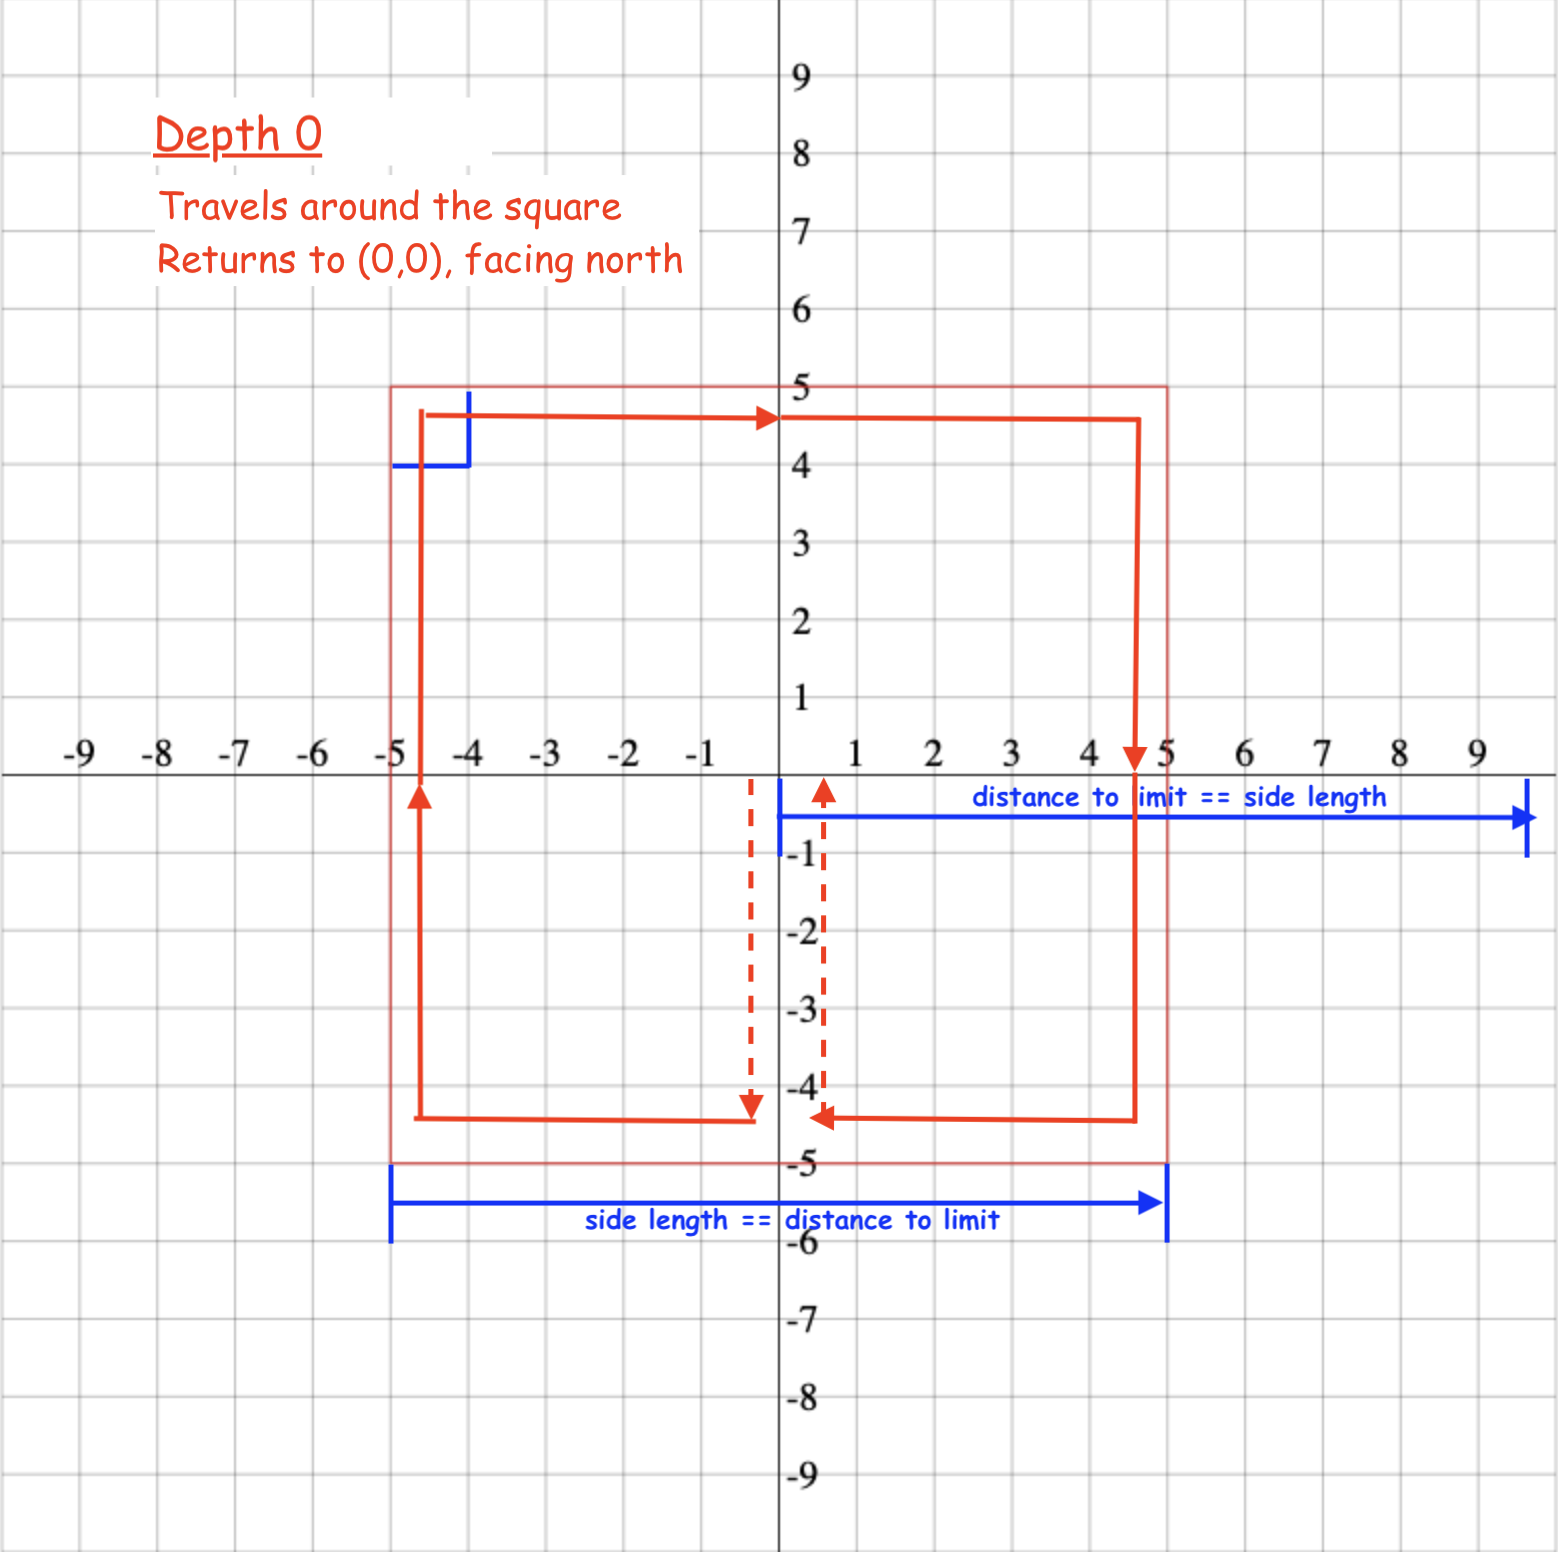 T-Square depth 0